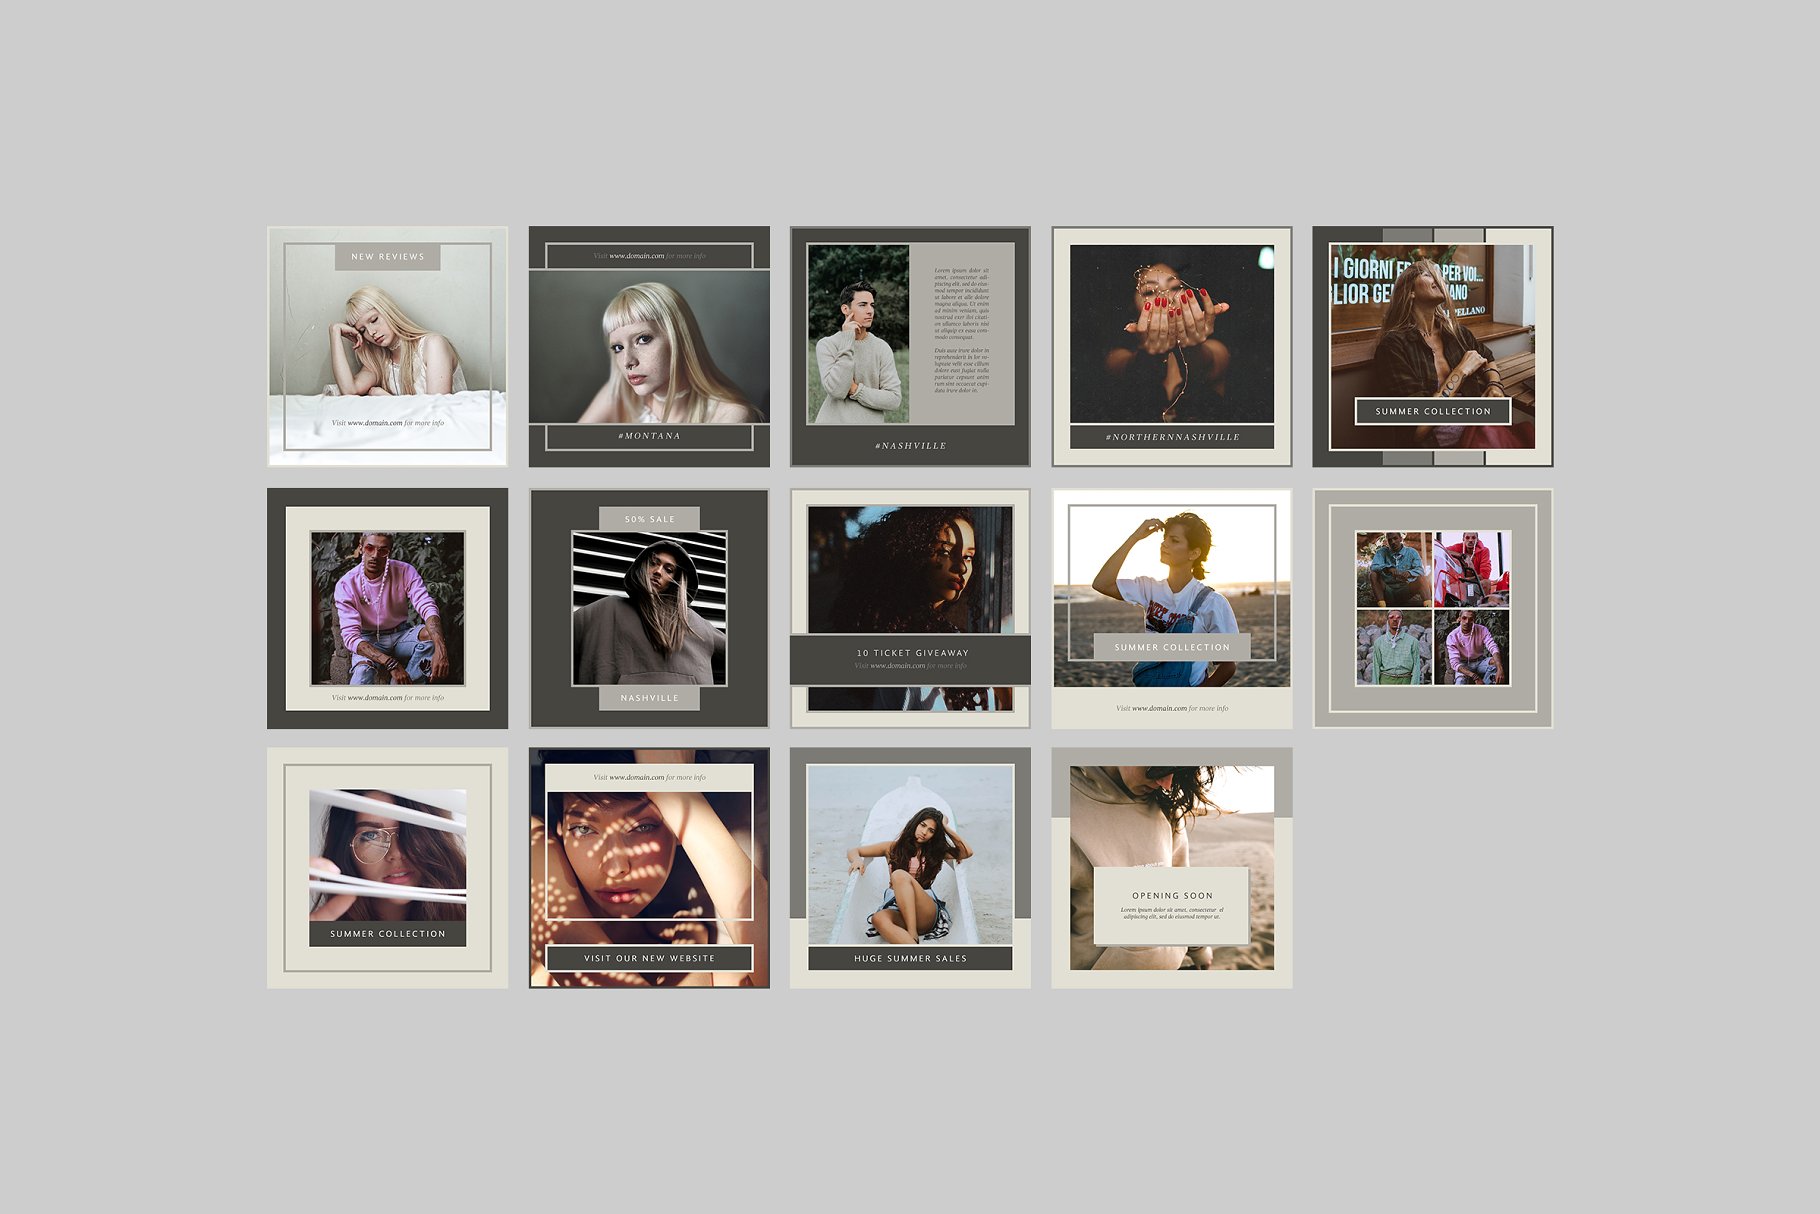 时尚模特摄影主题社交媒体贴图模板素材库精选 Nashville Social Media Templates插图(6)